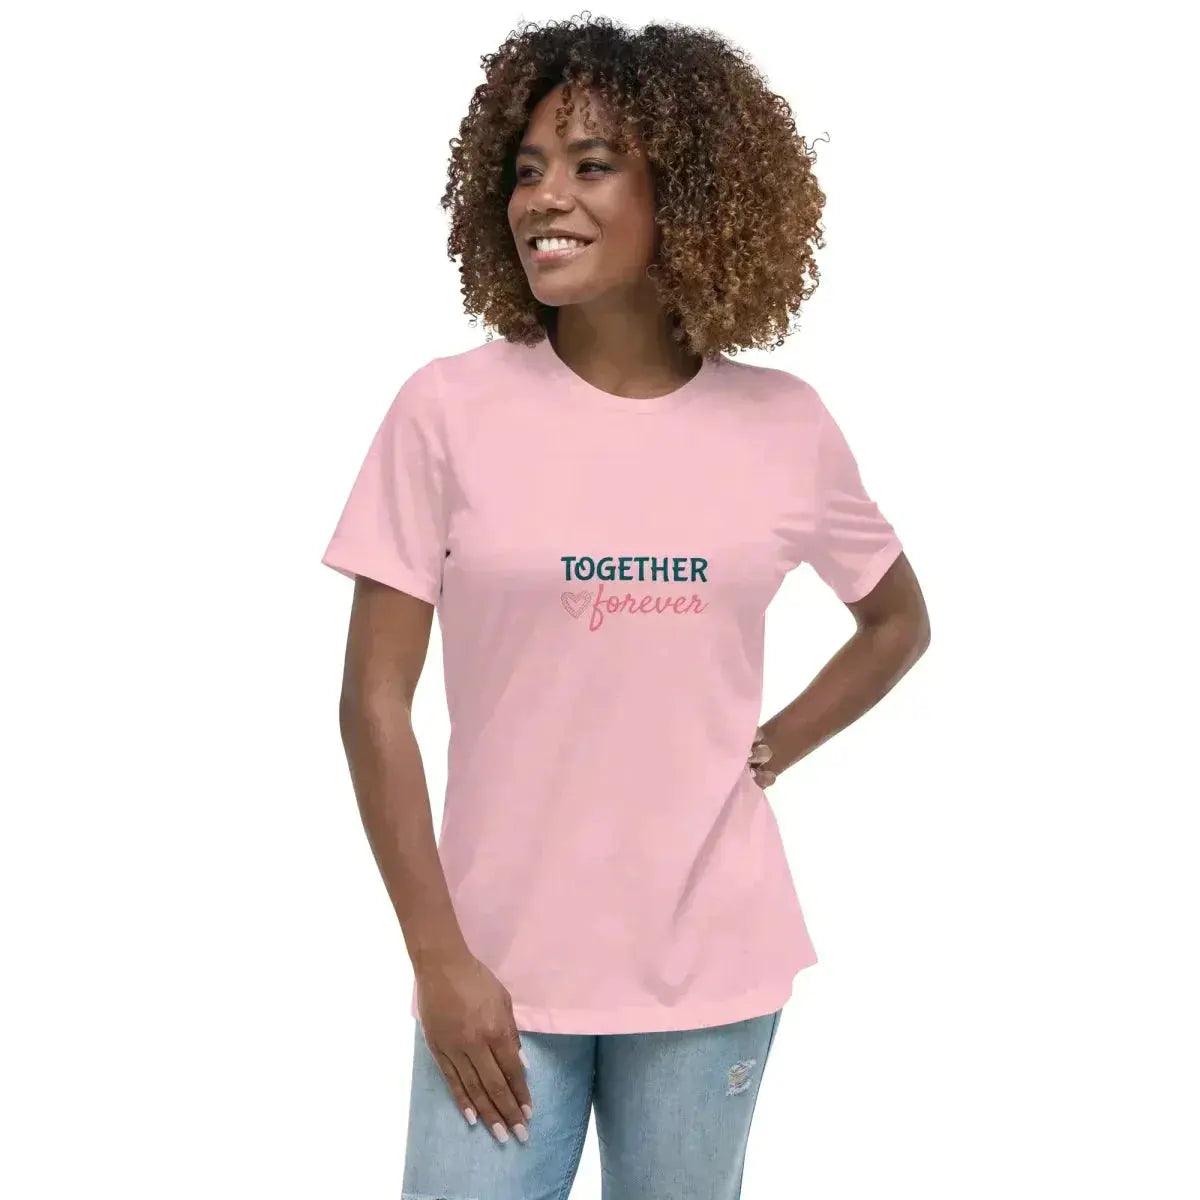 Damen T-Shirt S-3XL - Online kaufen im Sale - Große Auswahl ➤  Günstige Preise ▻